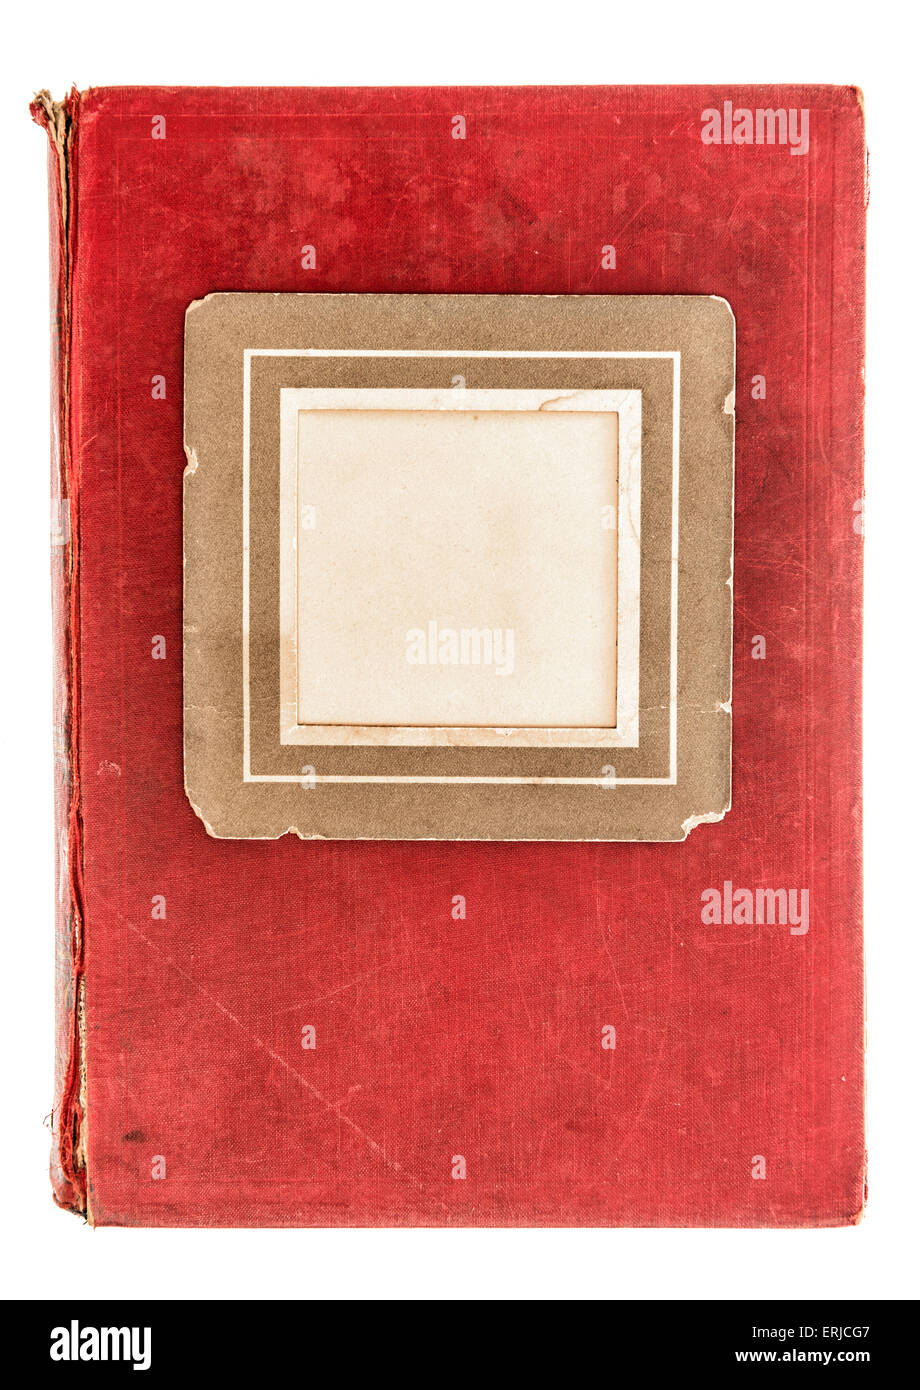 Couverture de livre textile rouge avec cadre photo vintage isolé sur fond blanc. Objet ancien Banque D'Images